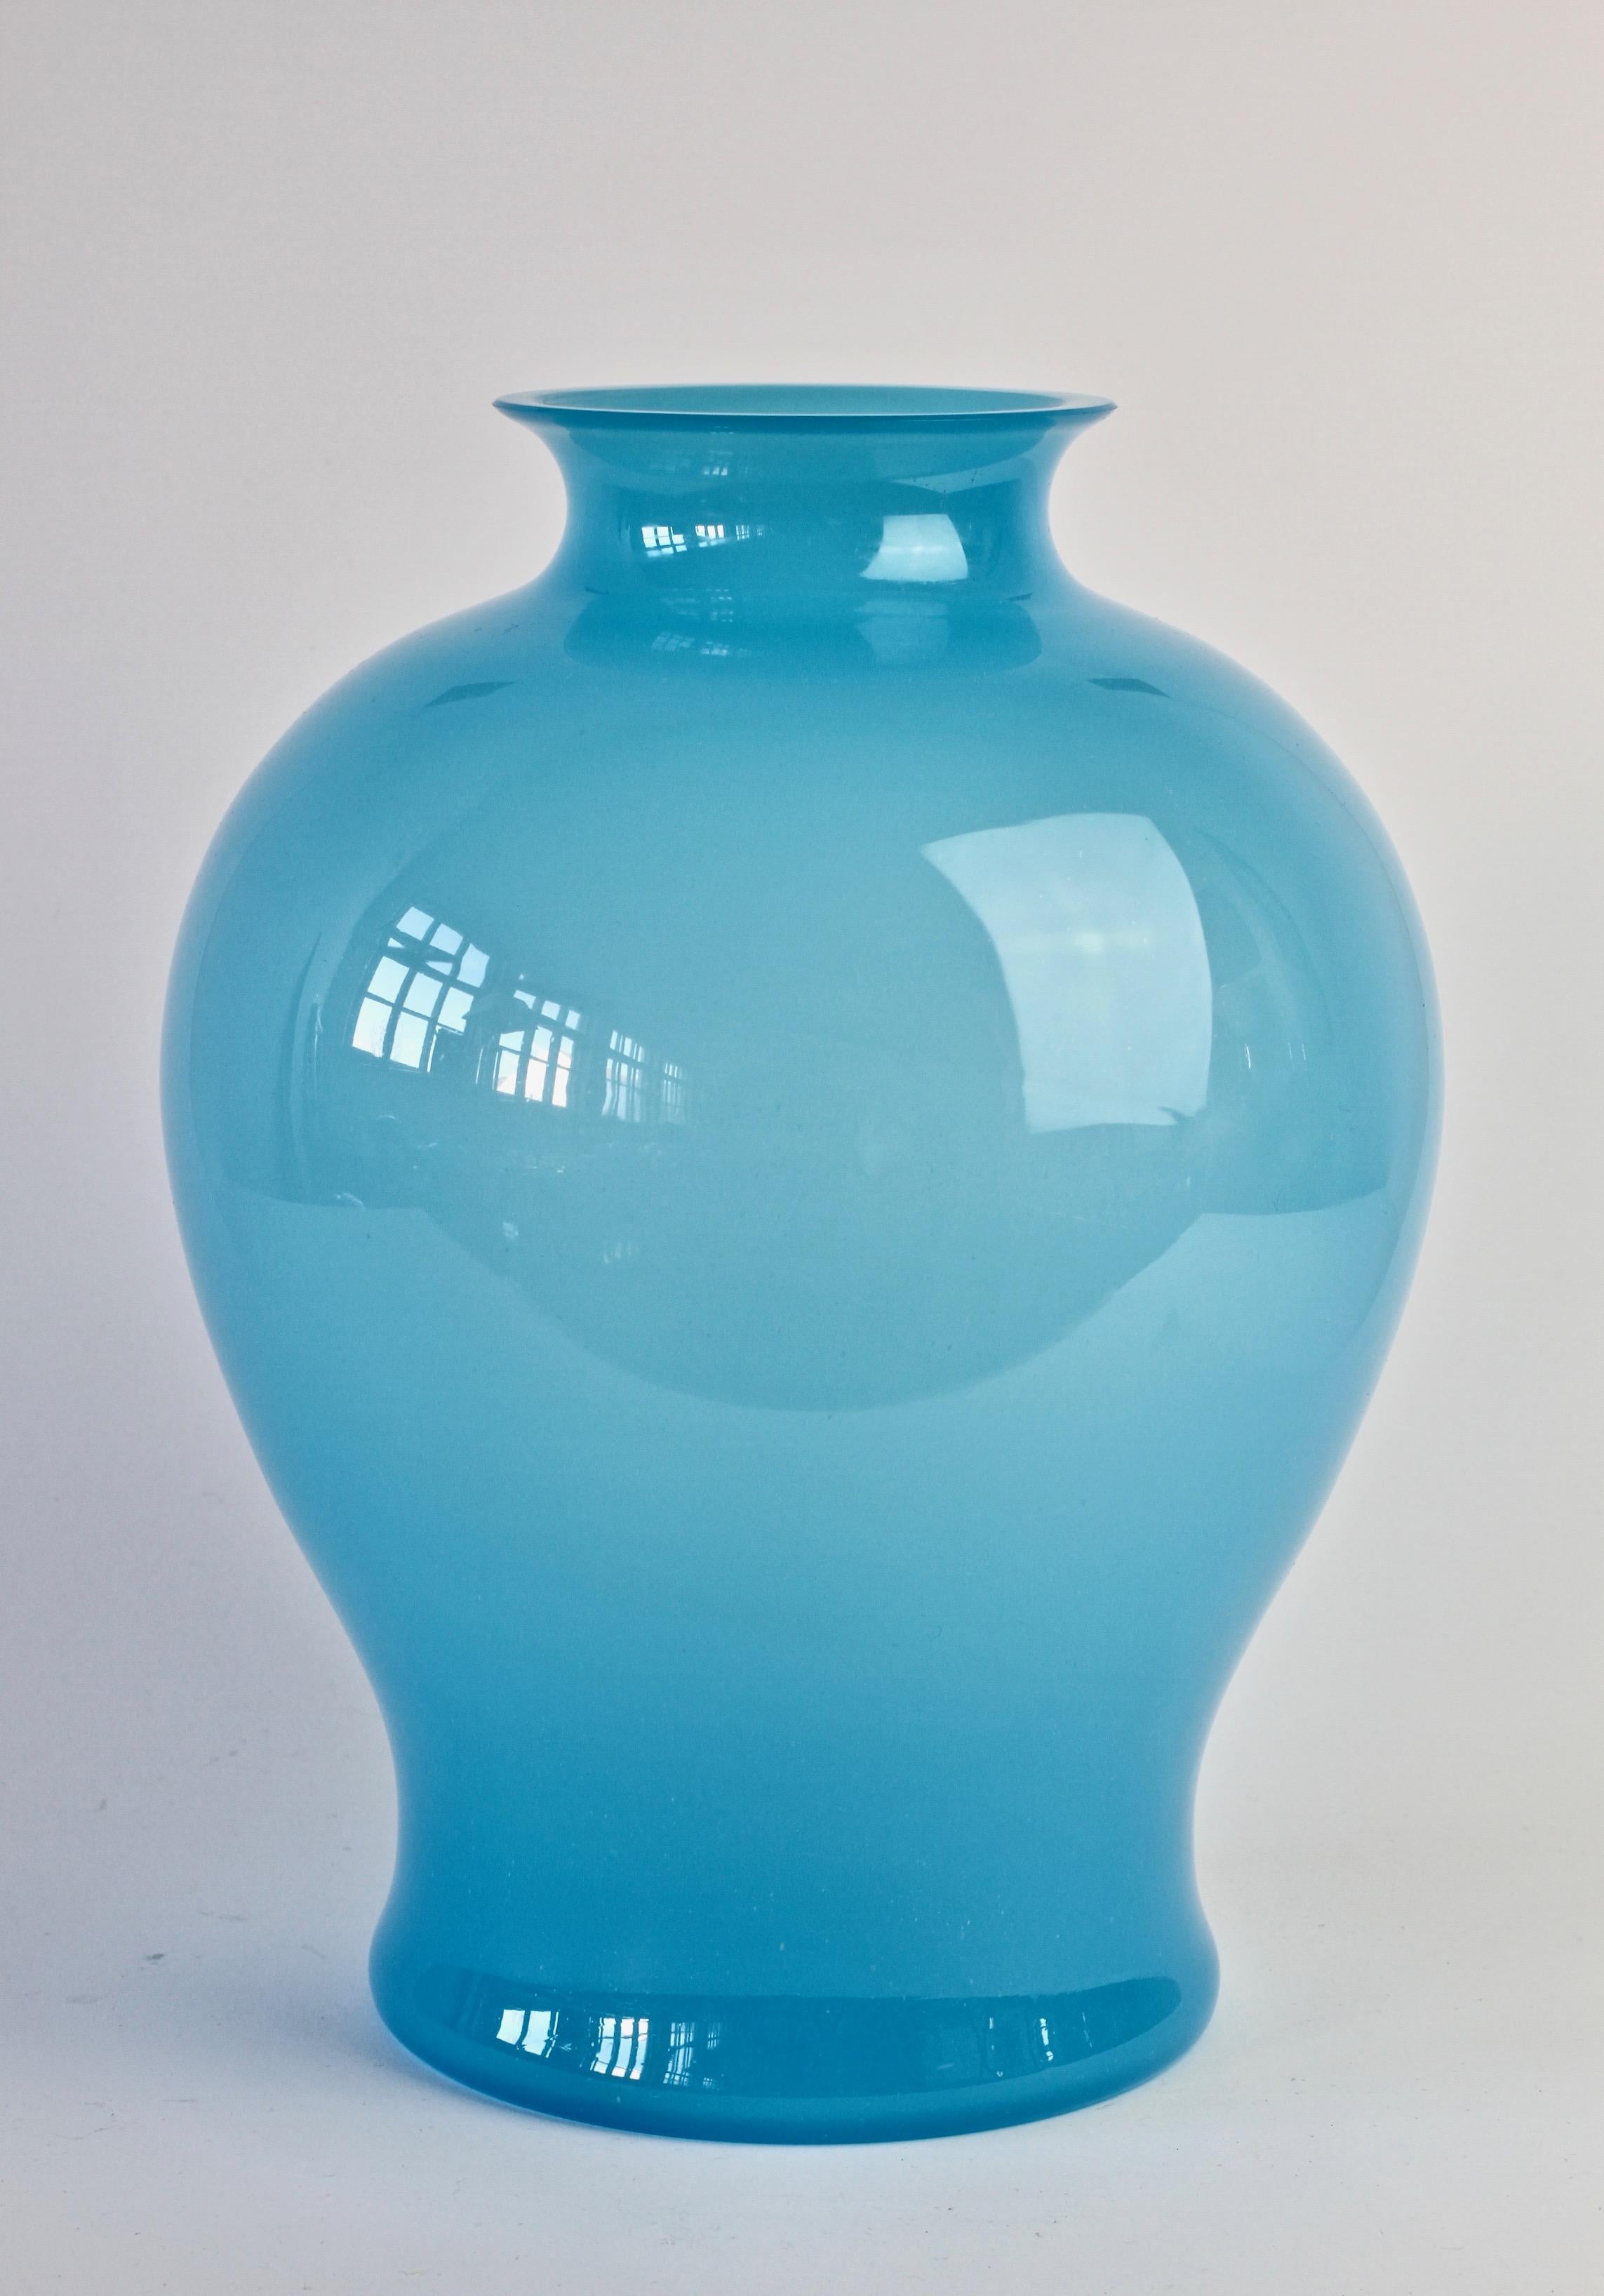 Große Vintage-Vase aus der Mitte des Jahrhunderts von Cenedese Vetri aus Murano, Italien. Besonders auffällig sind die elegante Form und die hellblaue Farbe. Ein seltenes Schiff - besonders in dieser Größe.

Die Abmessungen sind: 30 cm hoch und 24